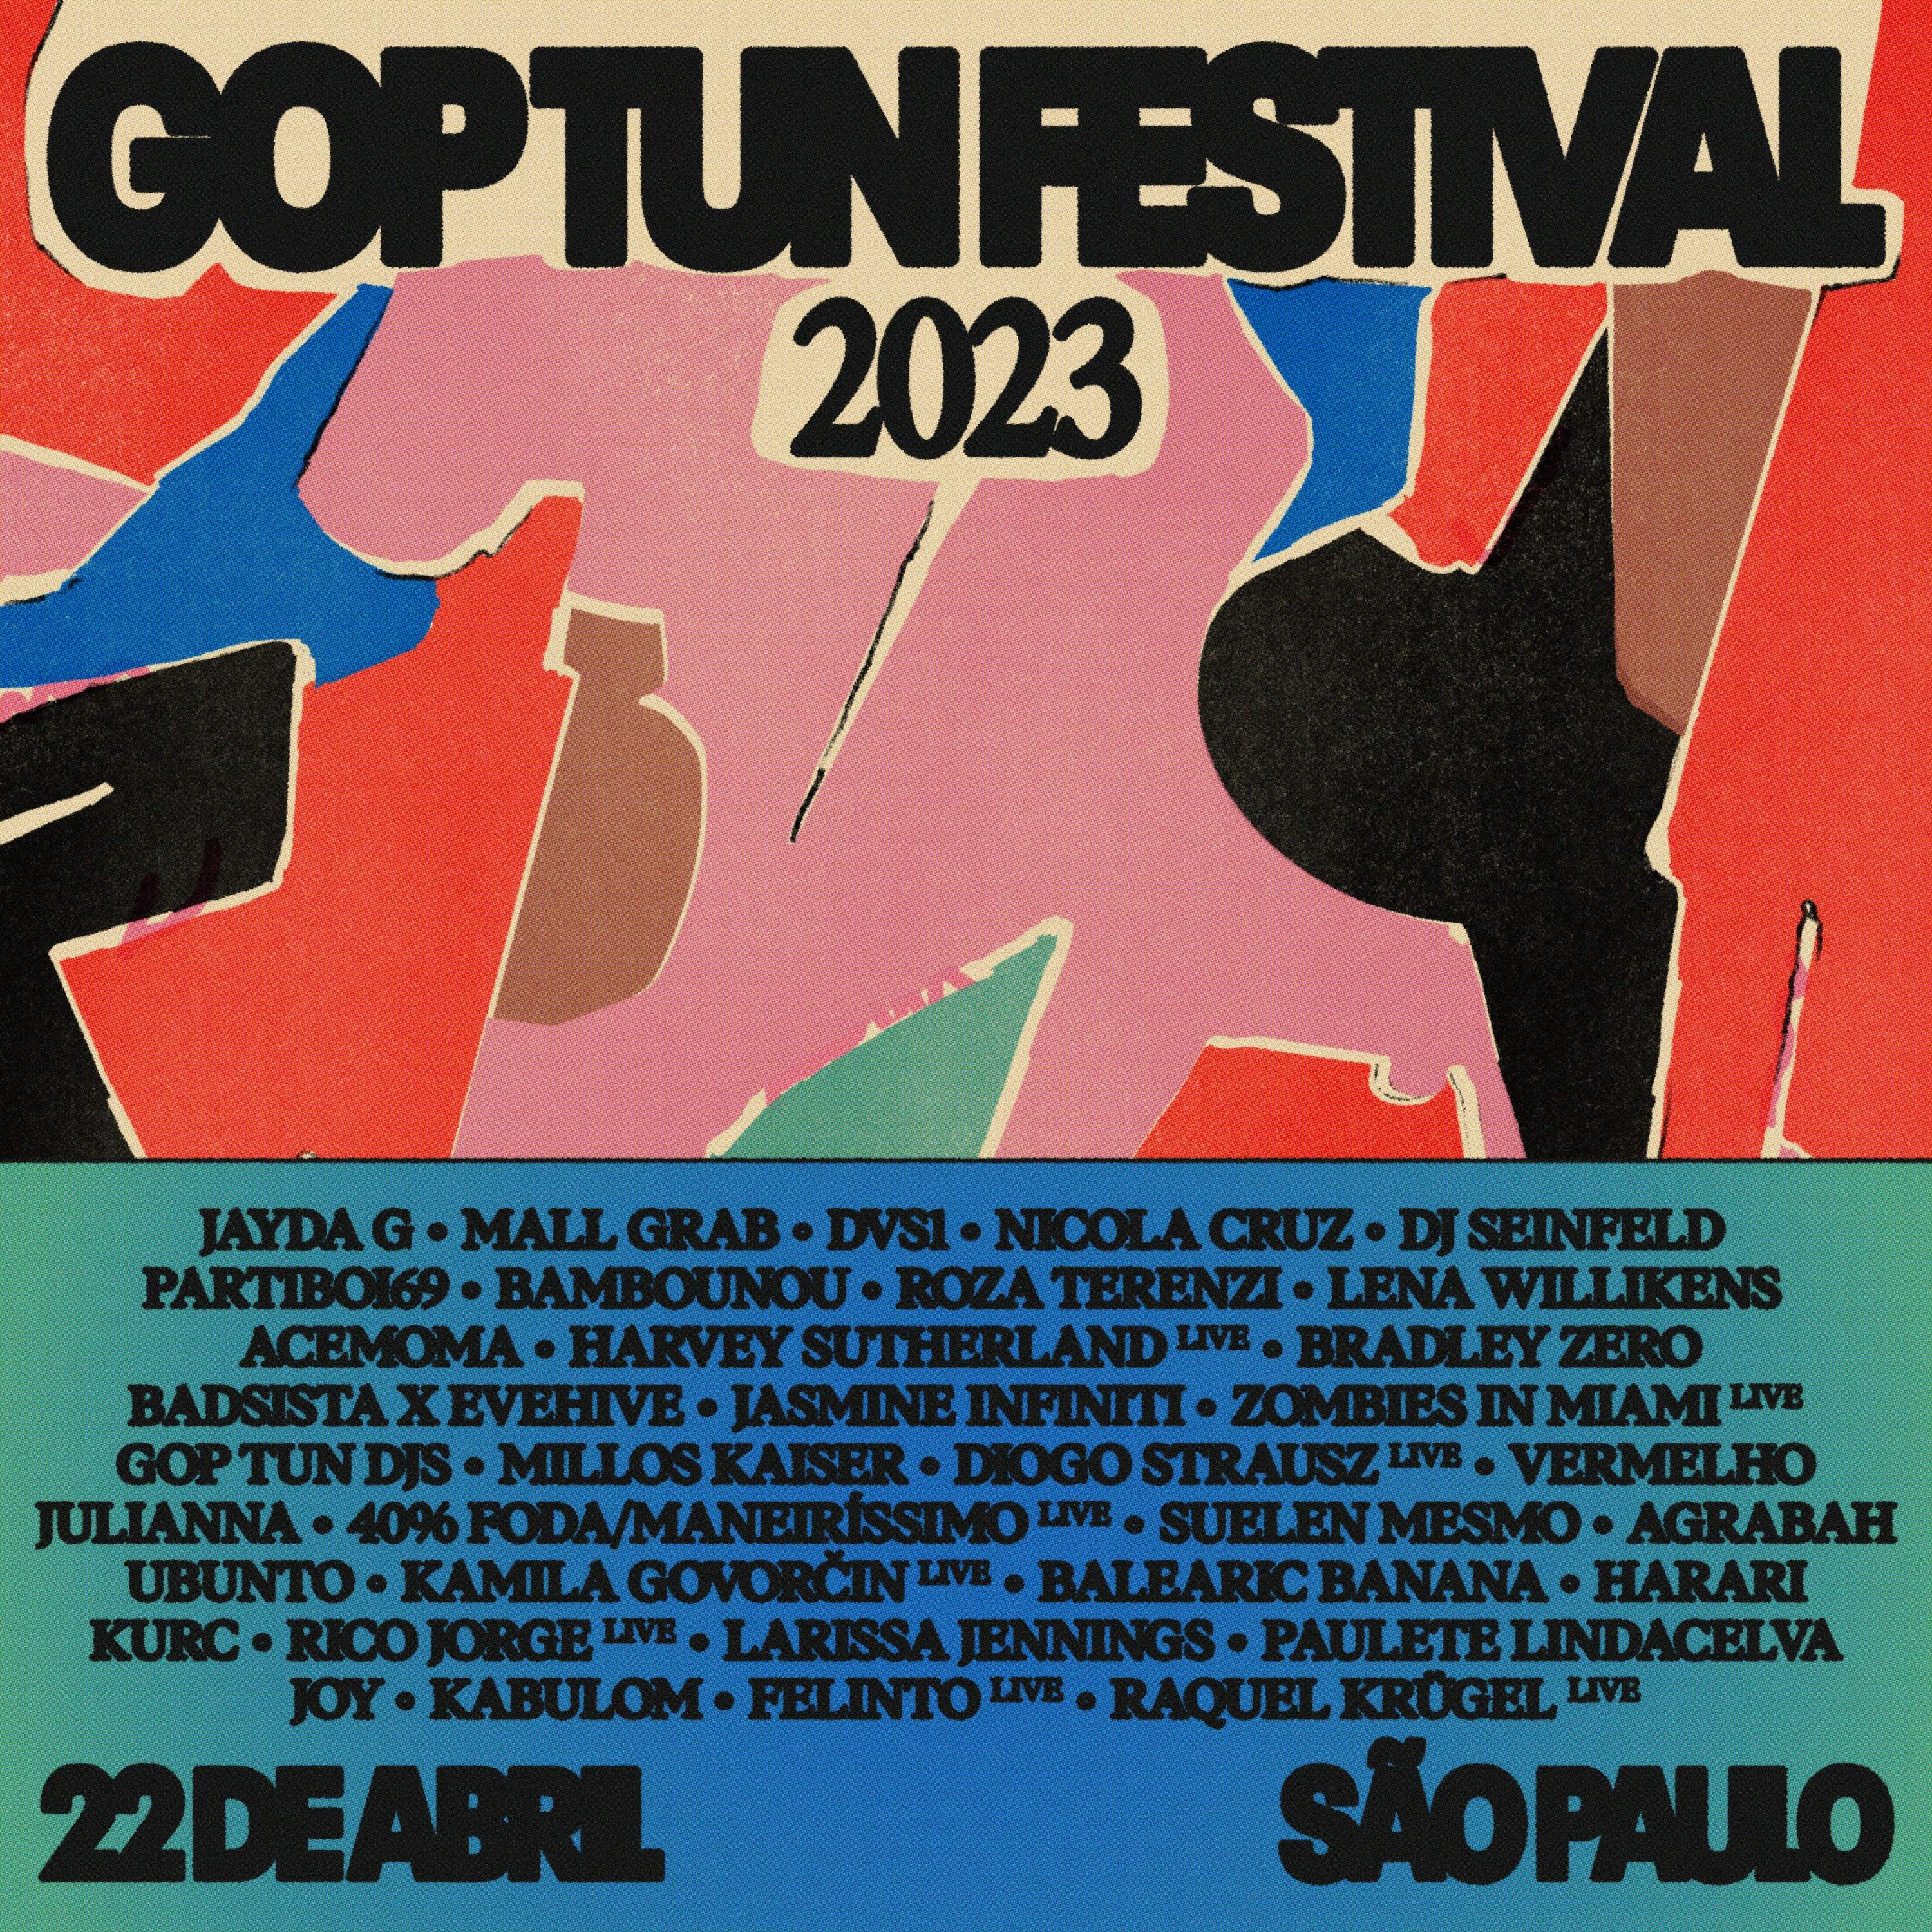 Gop Tun Festival 2023 - フライヤー表